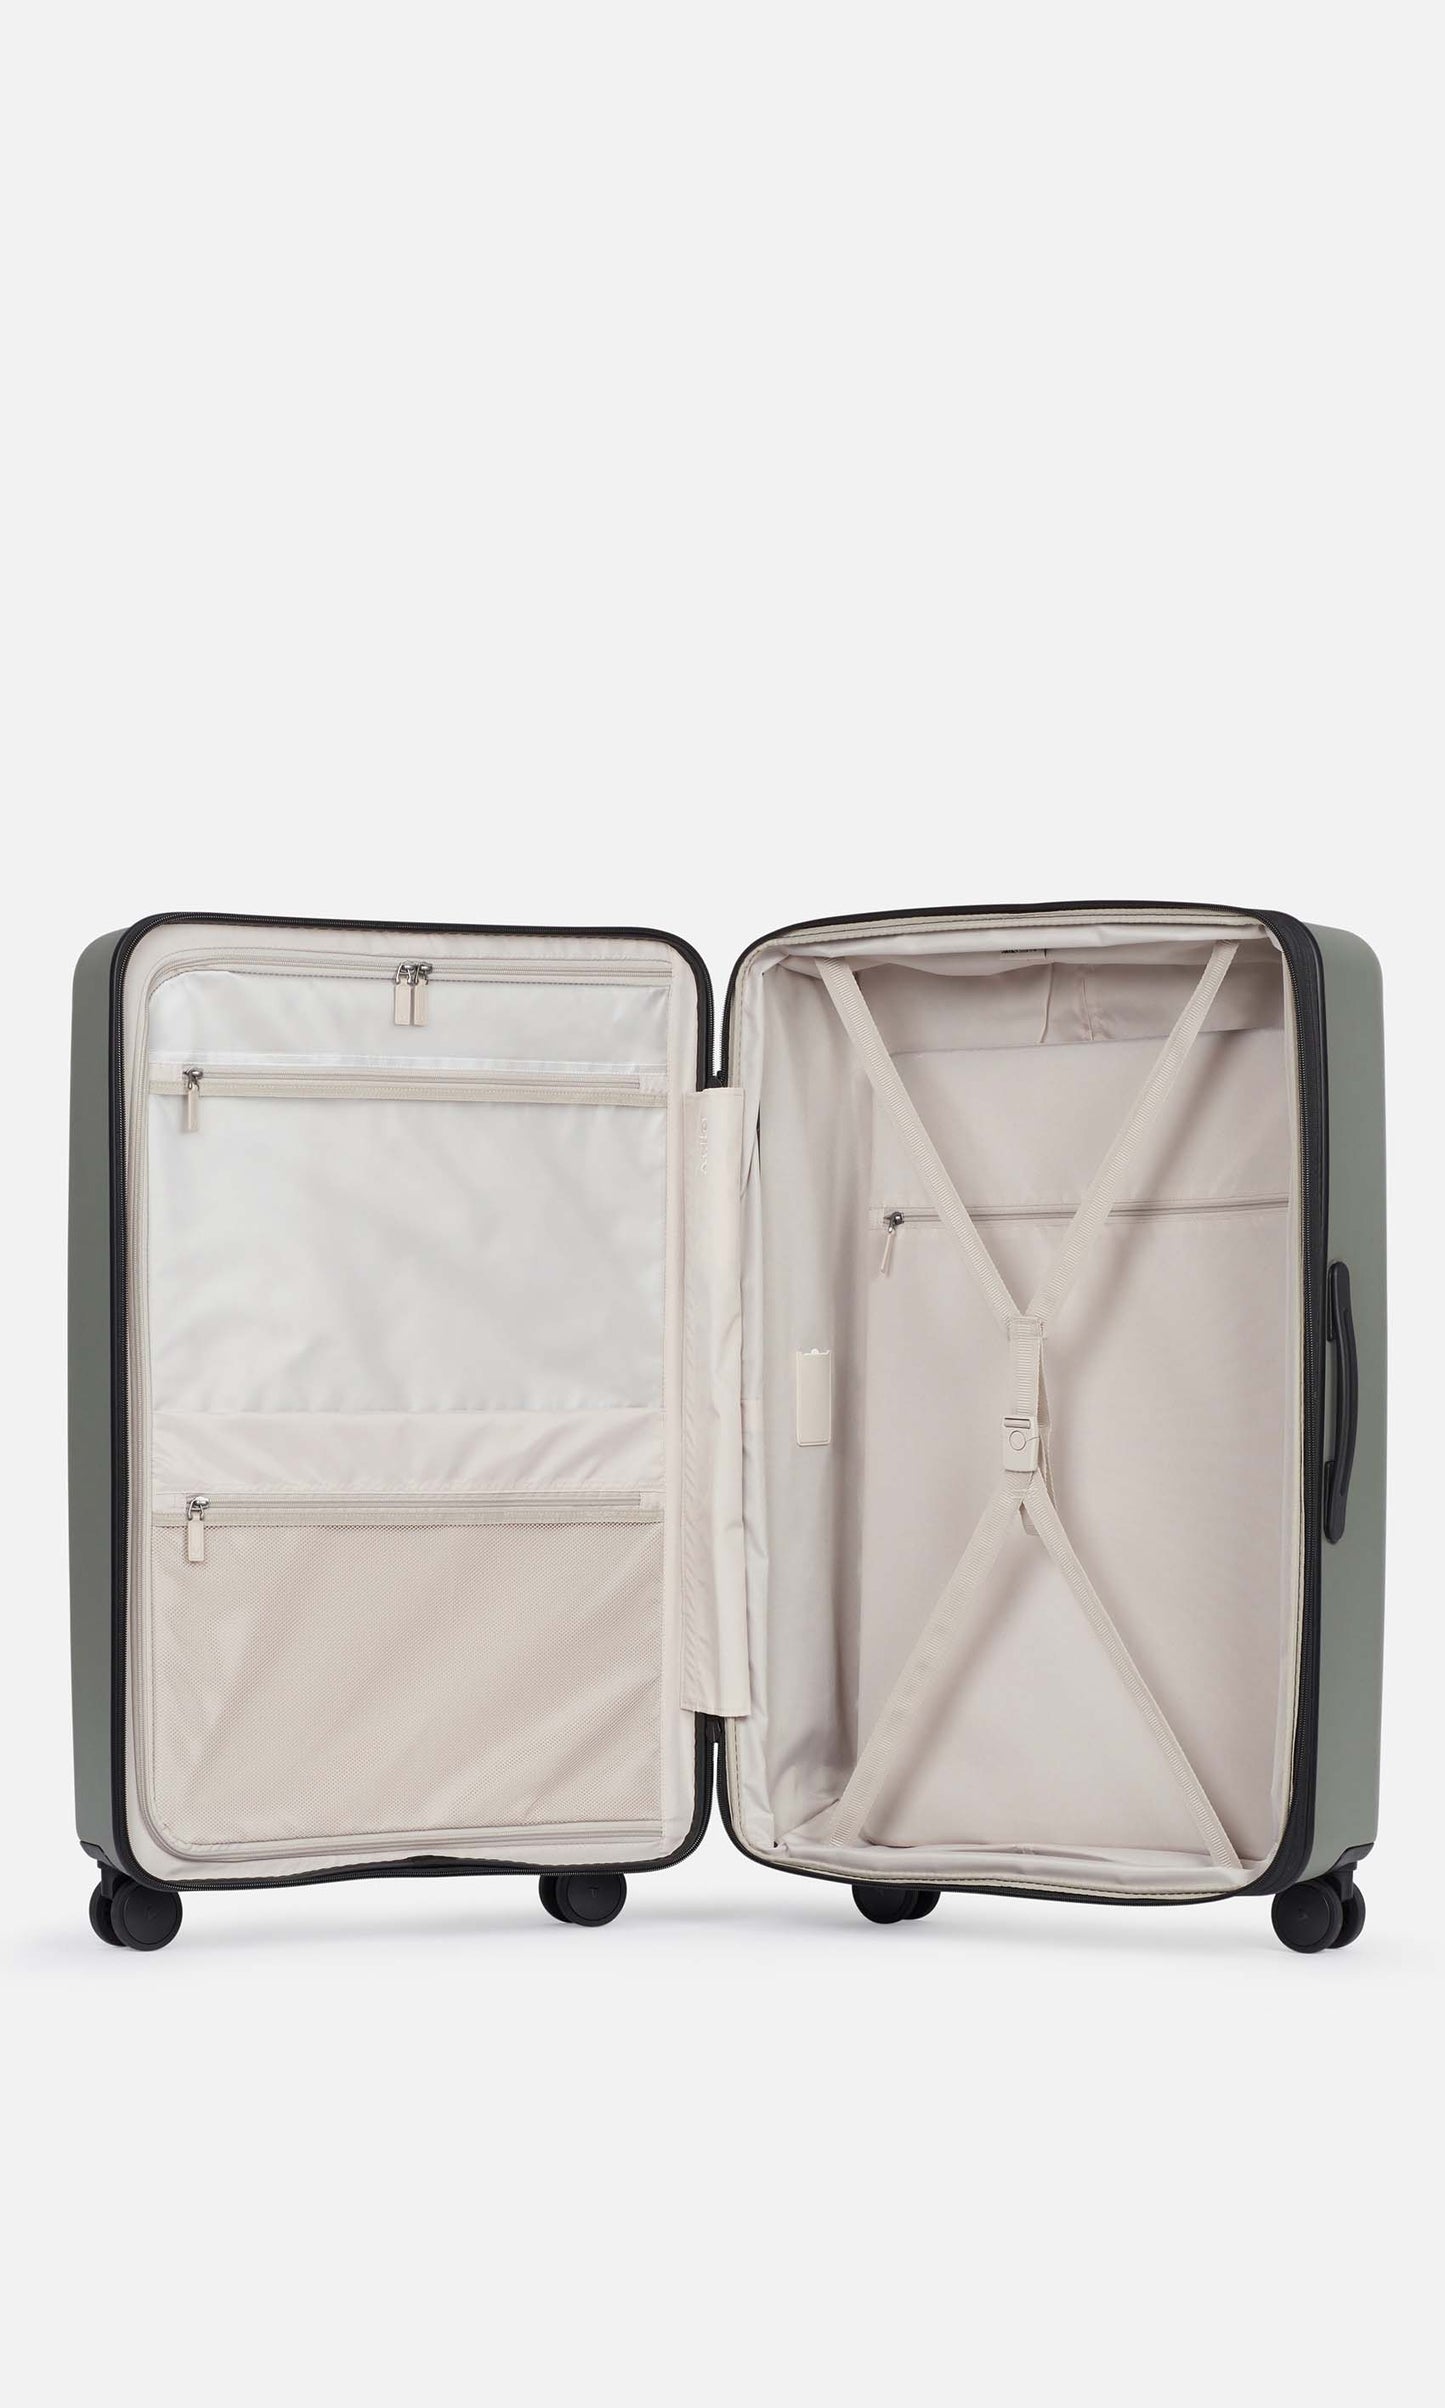 Antler Luggage -  Stamford large in khaki - Hard Suitcases Stamford Large Suitcase Khaki (Green) | Hard Luggage | Antler UK